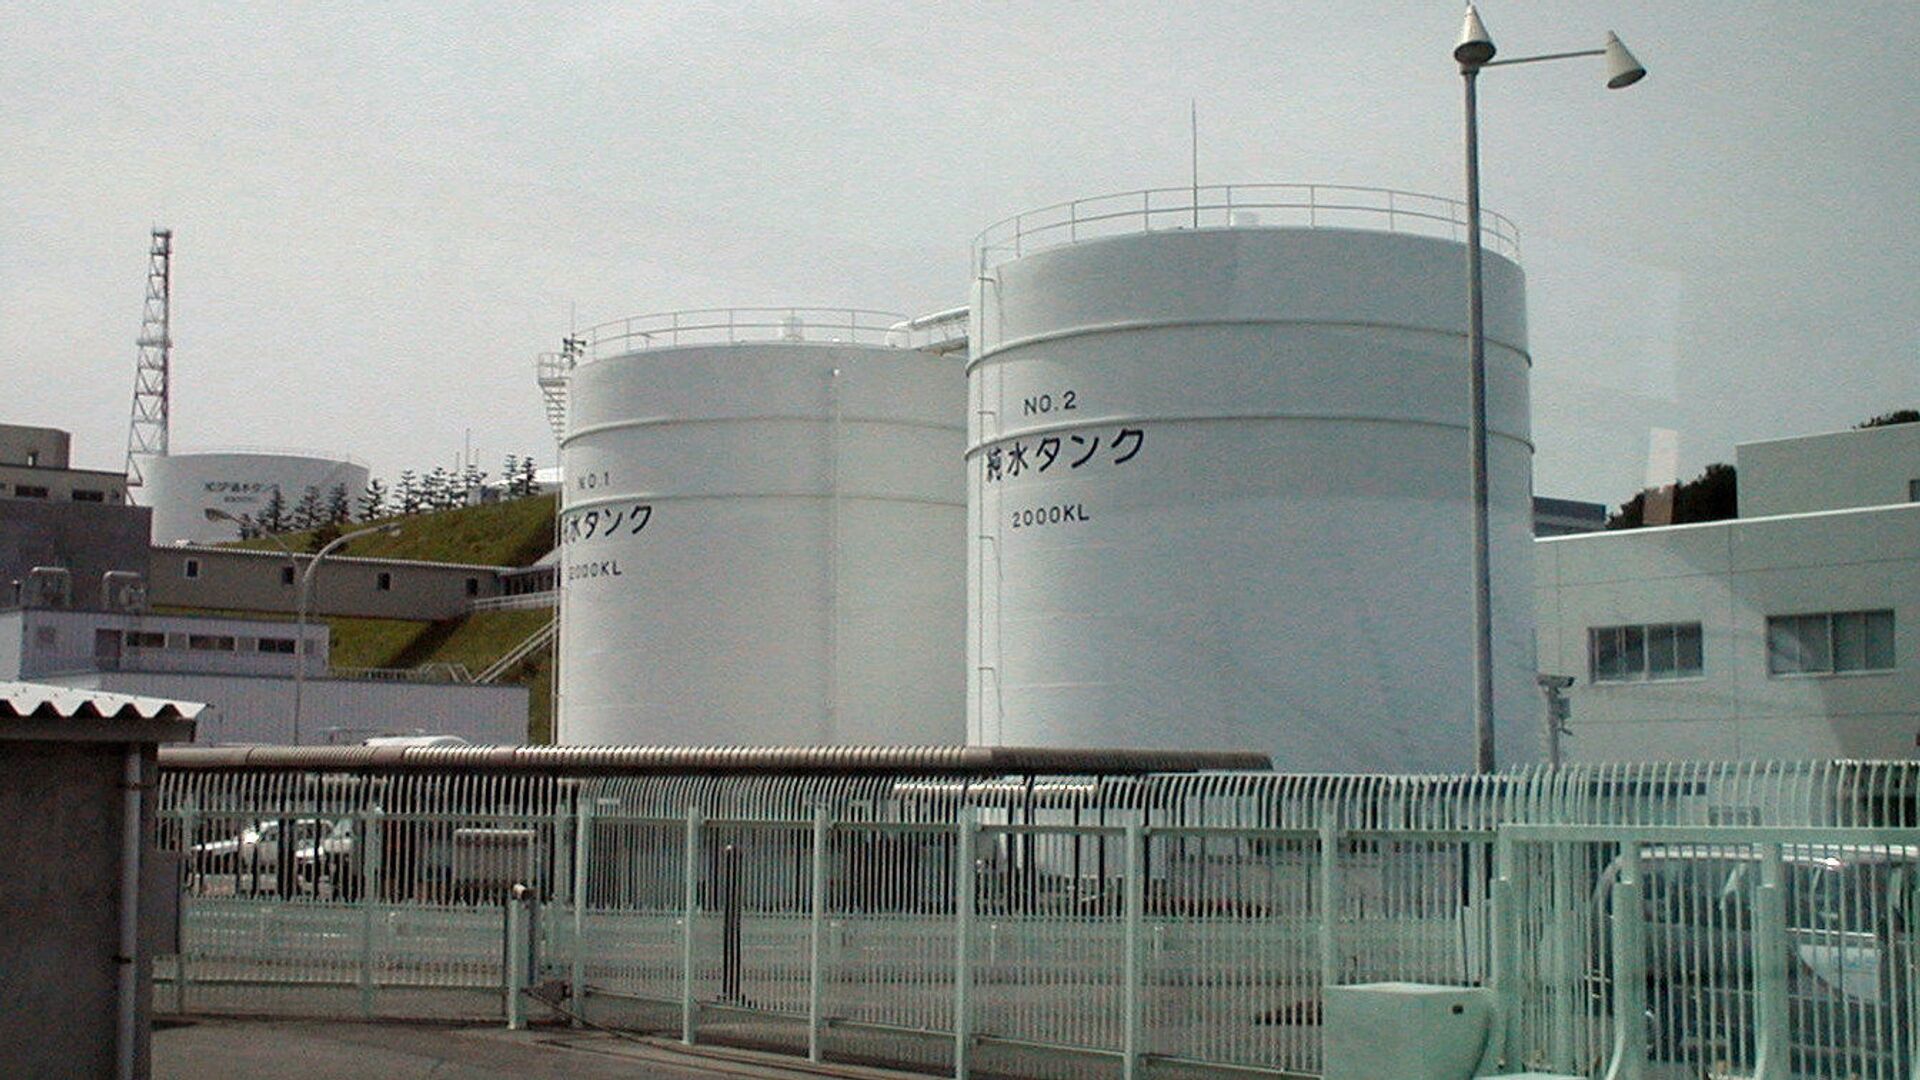 Nhà máy điện hạt nhân Fukushima-1 tại Nhật Bản được xây dựng vào những năm 1960. Vào thời điểm xảy ra thảm họa, đây là một trong những nhà máy vận hành lâu đời nhất, không có hệ thống an toàn chủ động và thụ động, như các nhà máy hiện đại. - Sputnik Việt Nam, 1920, 23.08.2023